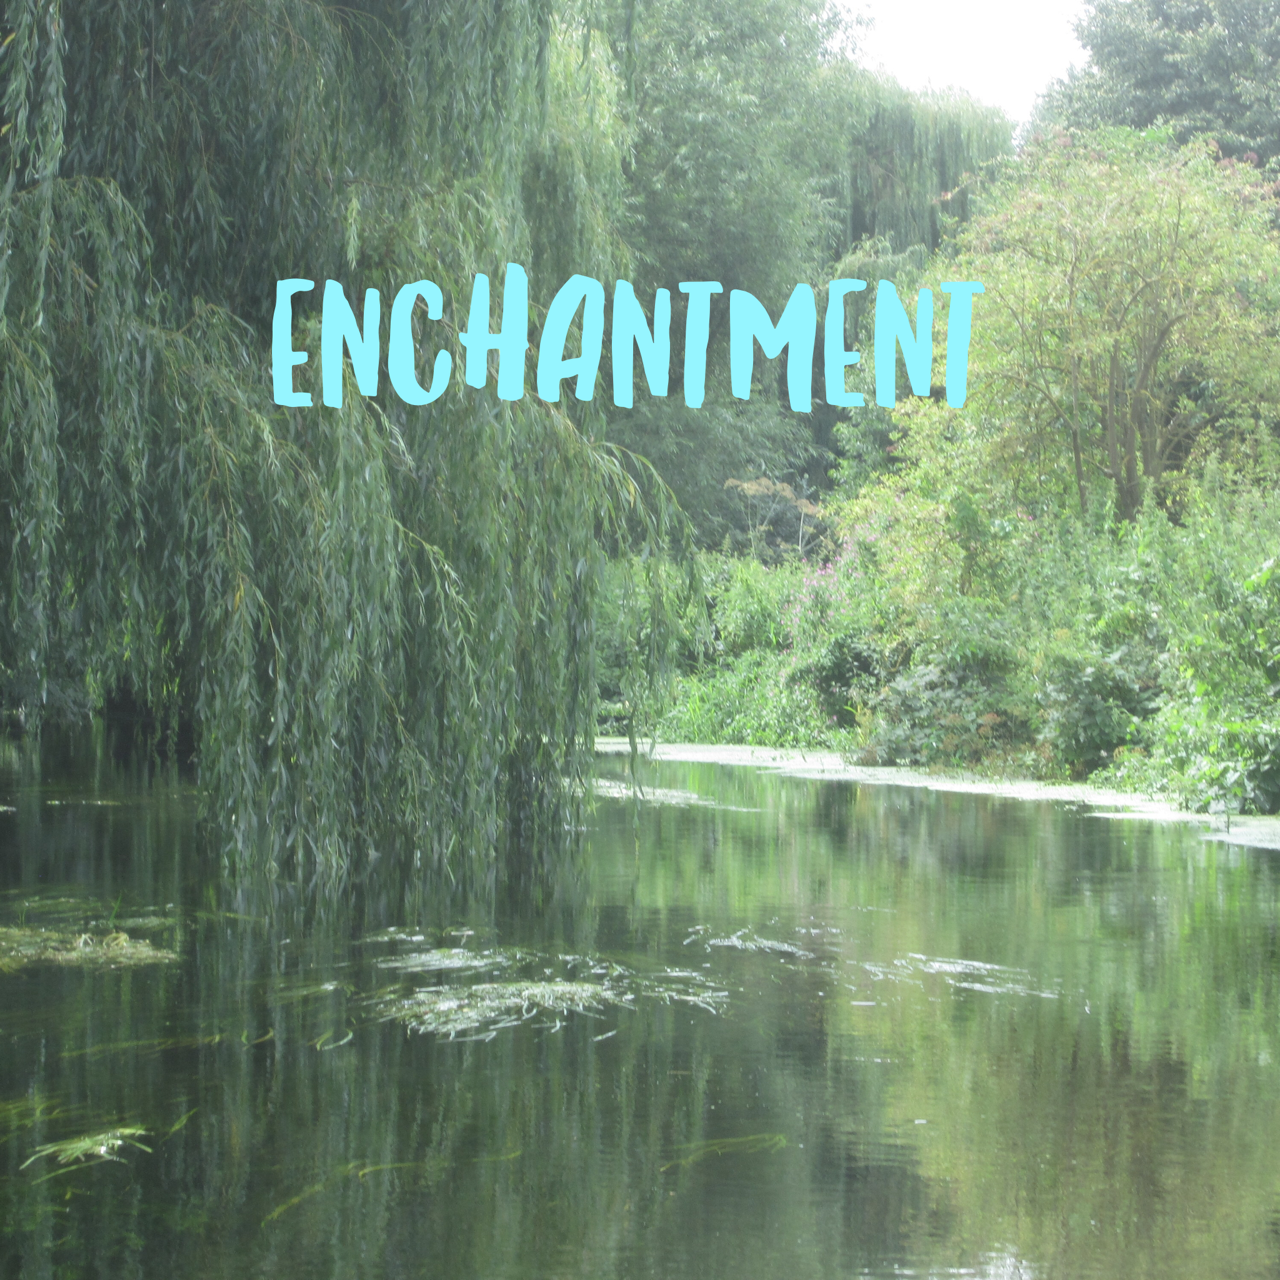 19Dec--enchantment